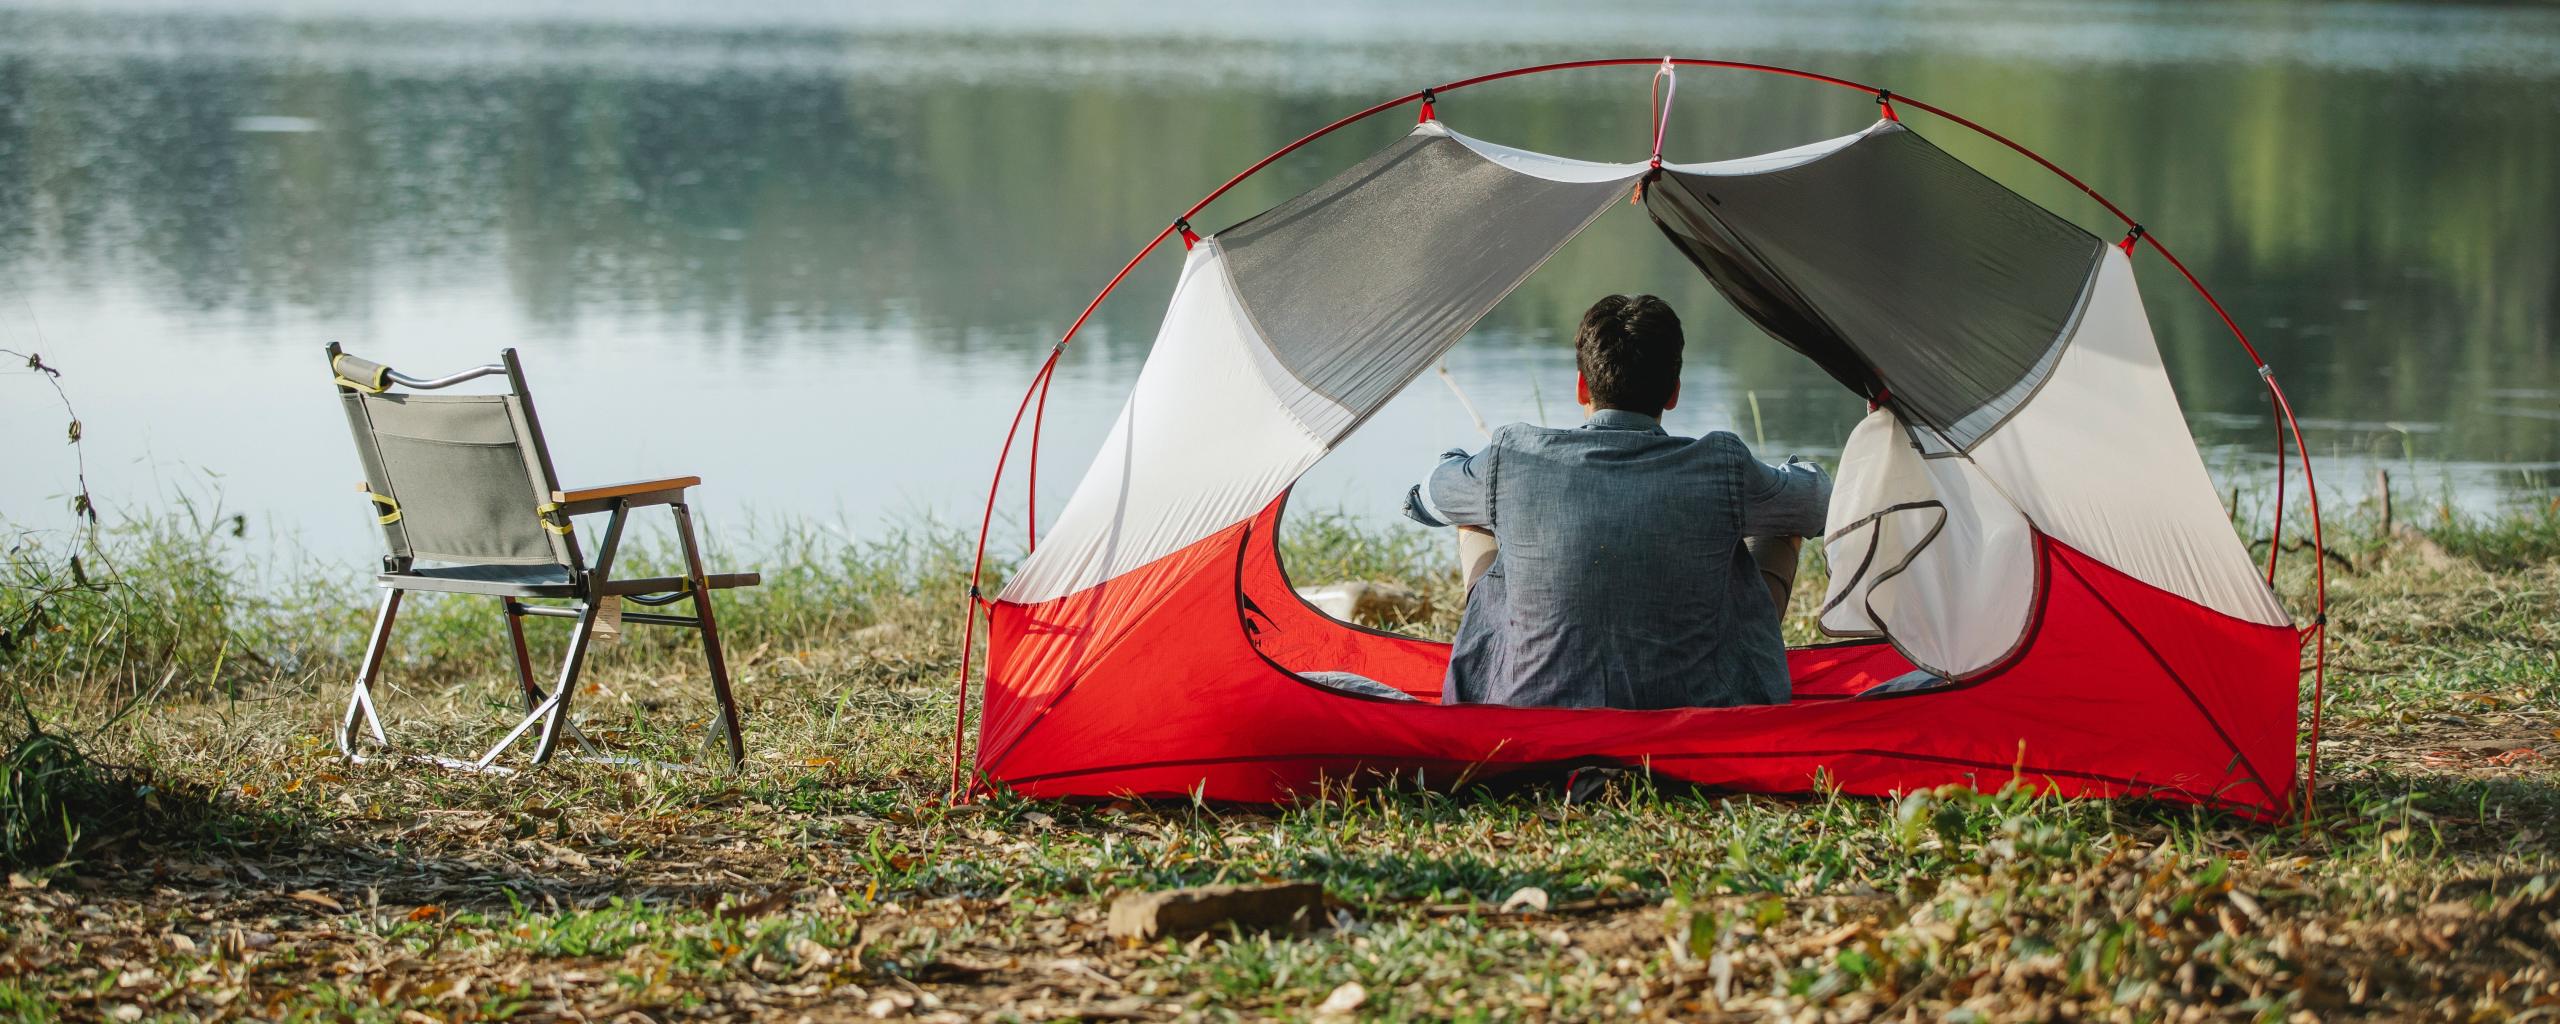 We zien iemand in een kampeertent zitten die uitkijkt over het water. Naast de tent staat een campingstoel.